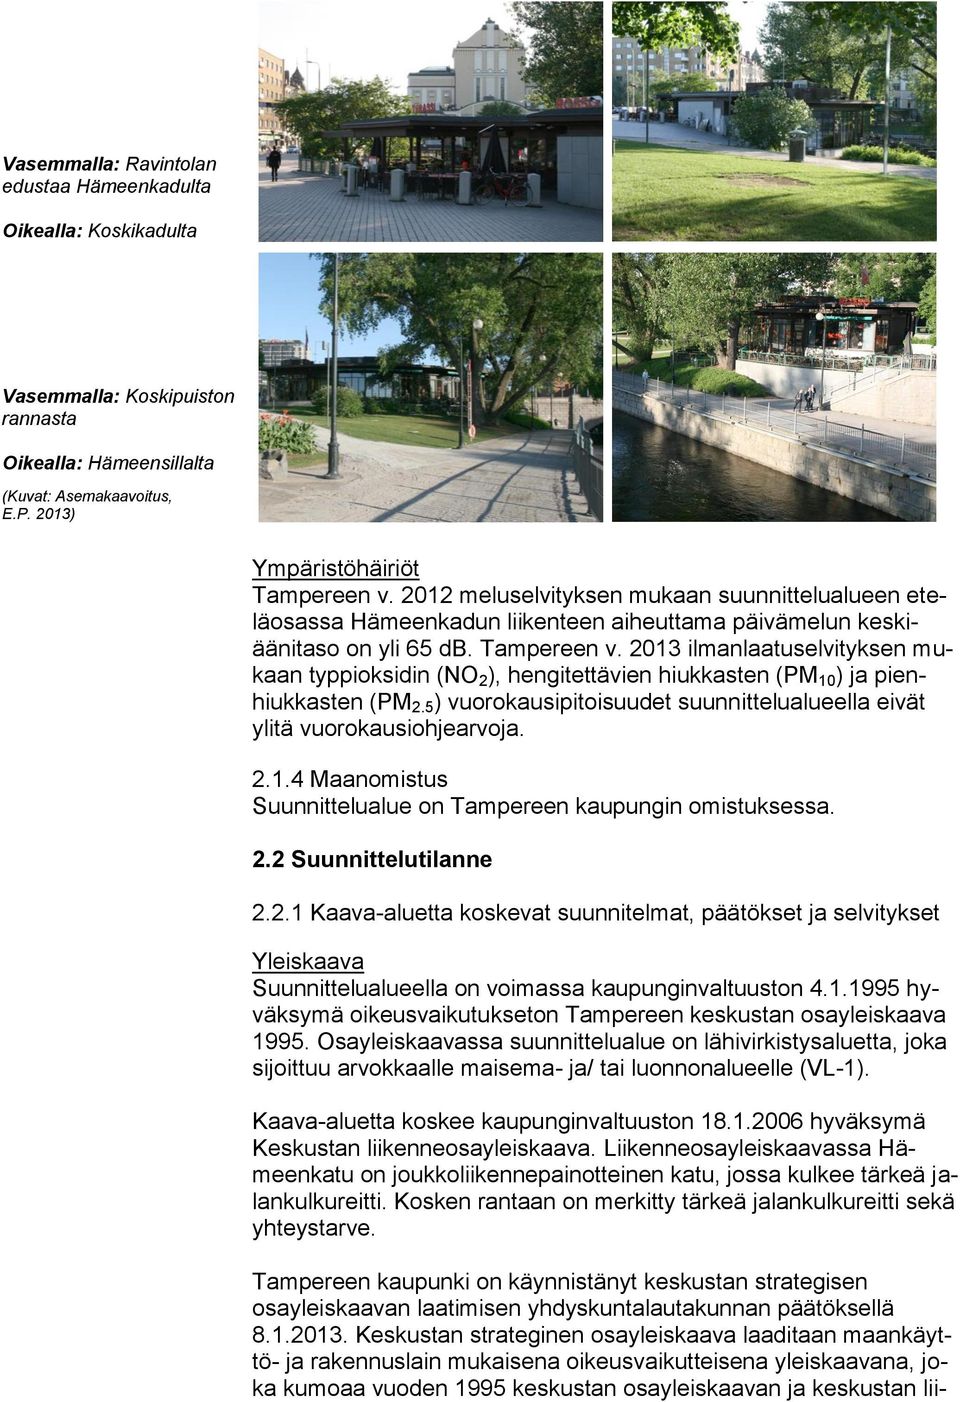 2013 ilmanlaatuselvityksen mukaan typpioksidin (NO 2 ), hengitettävien hiukkasten (PM 10 ) ja pienhiukkasten (PM 2.5 ) vuorokausipitoisuudet suunnittelualueella eivät ylitä vuorokausiohjearvoja. 2.1.4 Maanomistus Suunnittelualue on Tampereen kaupungin omistuksessa.